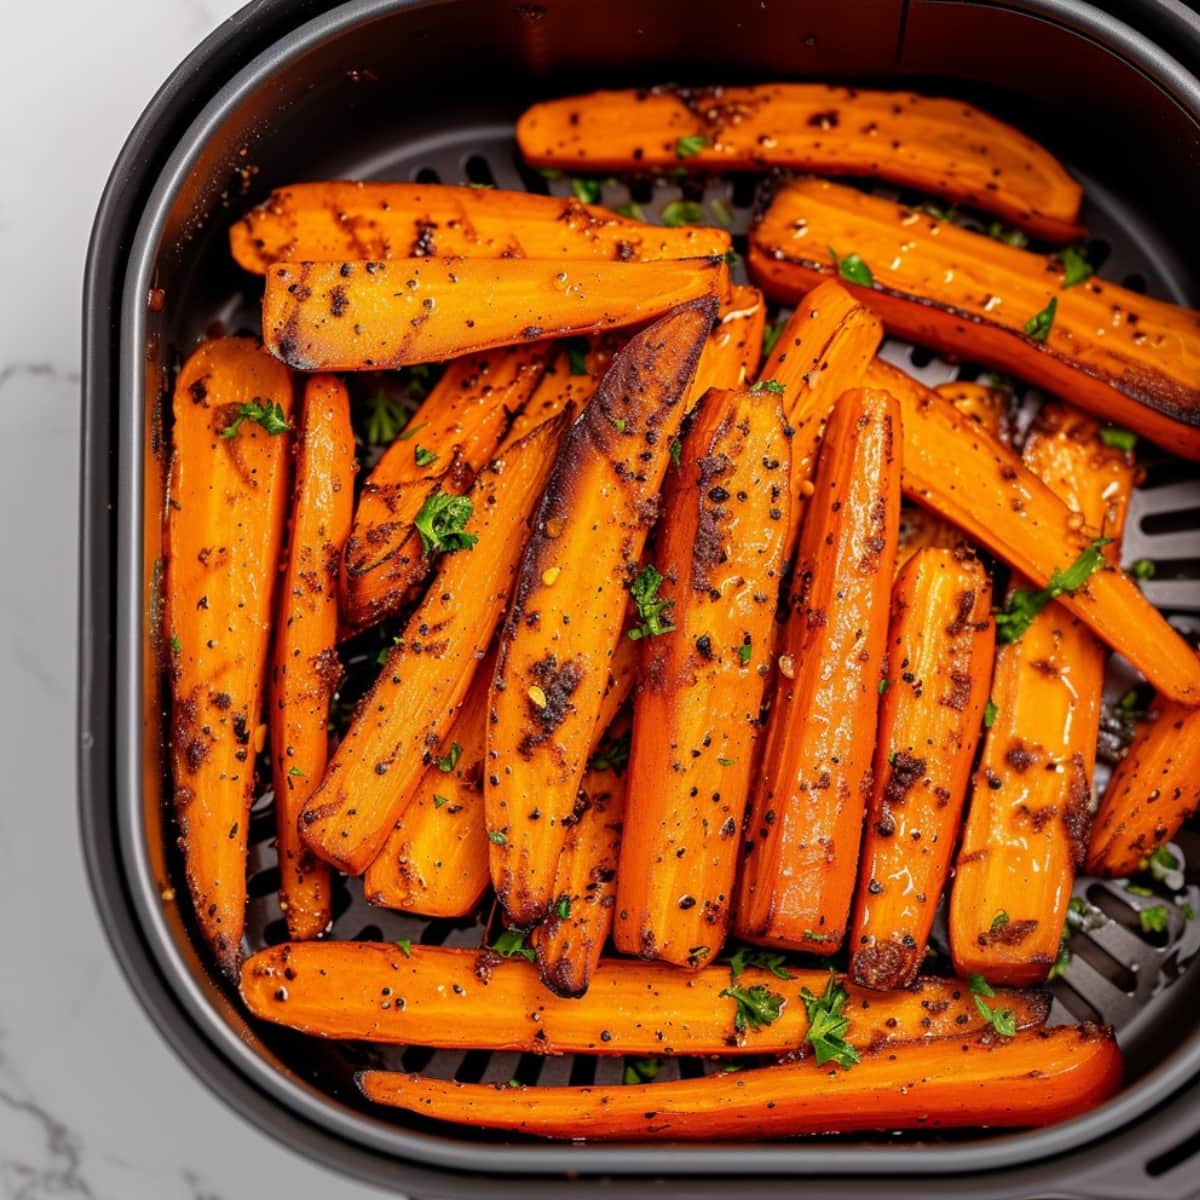 Carrots sticks inside air fryer